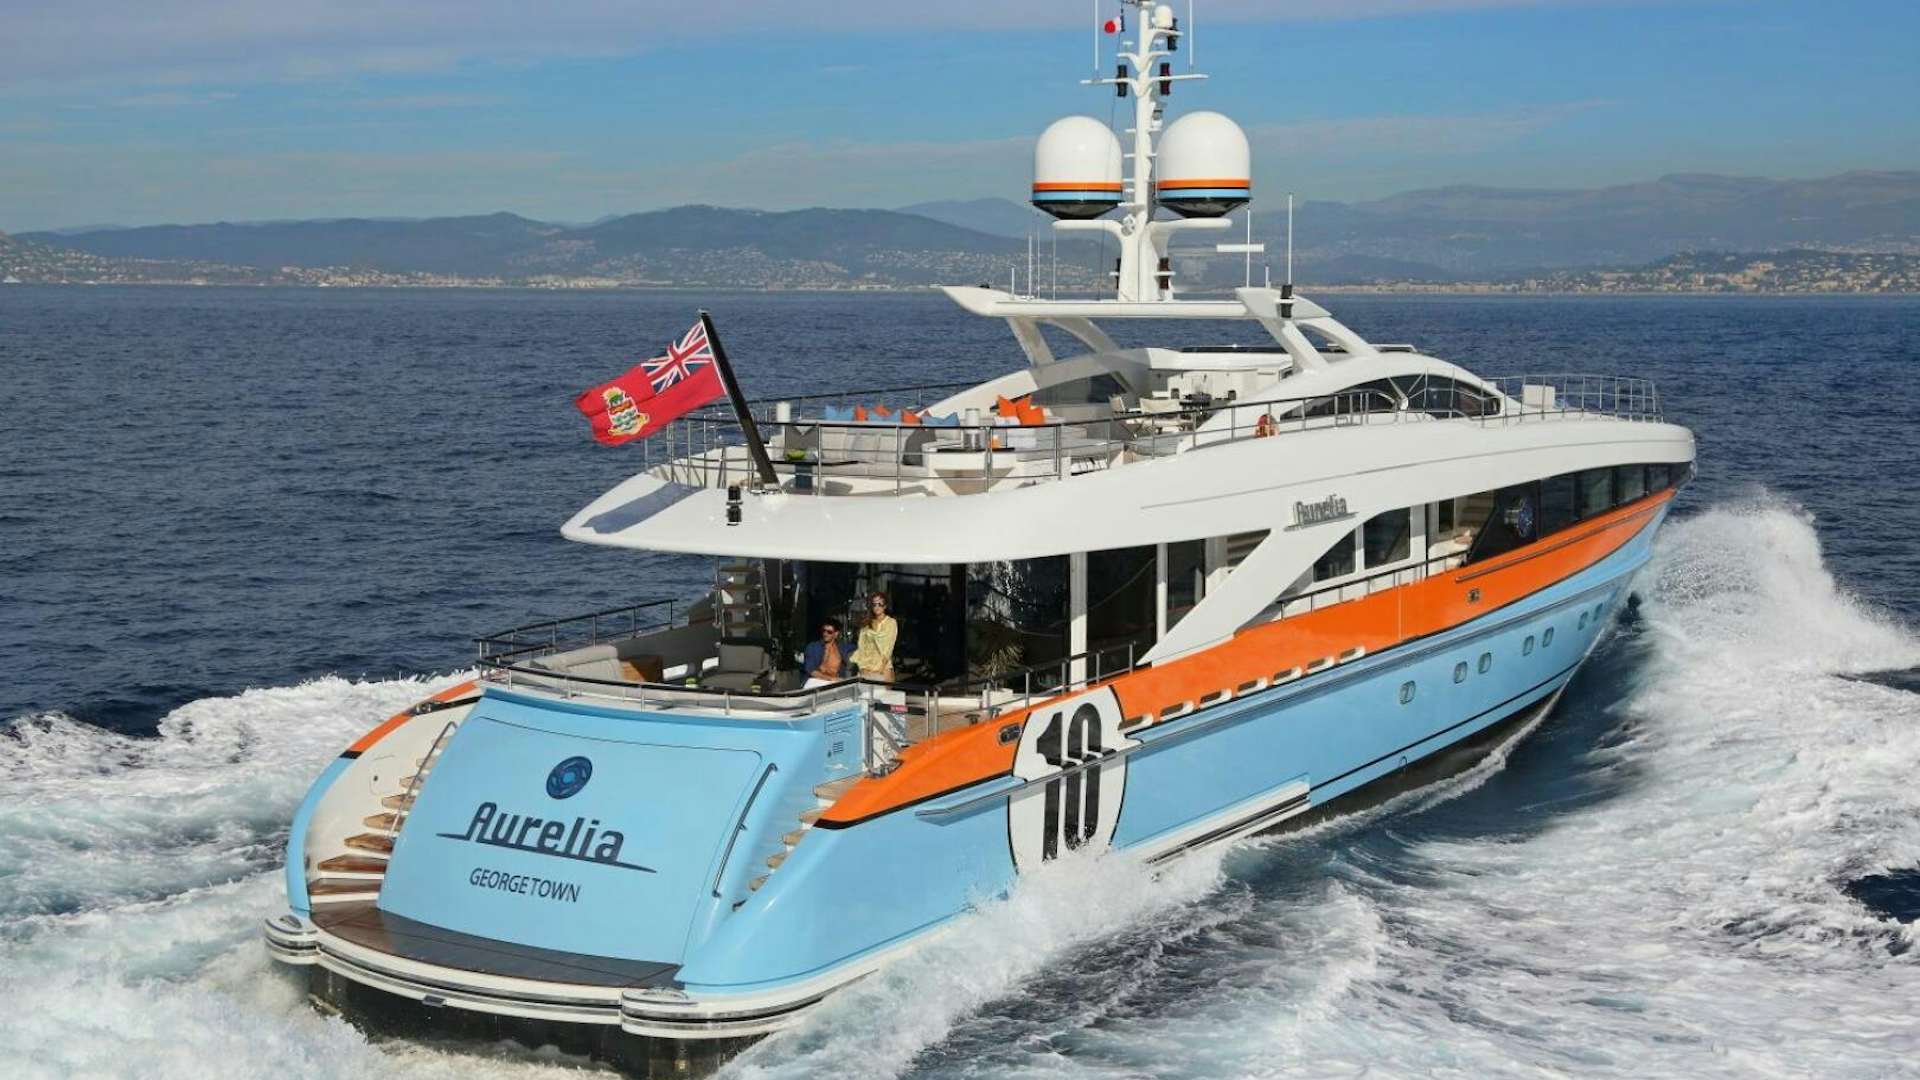 Aurelia
Yacht for Sale